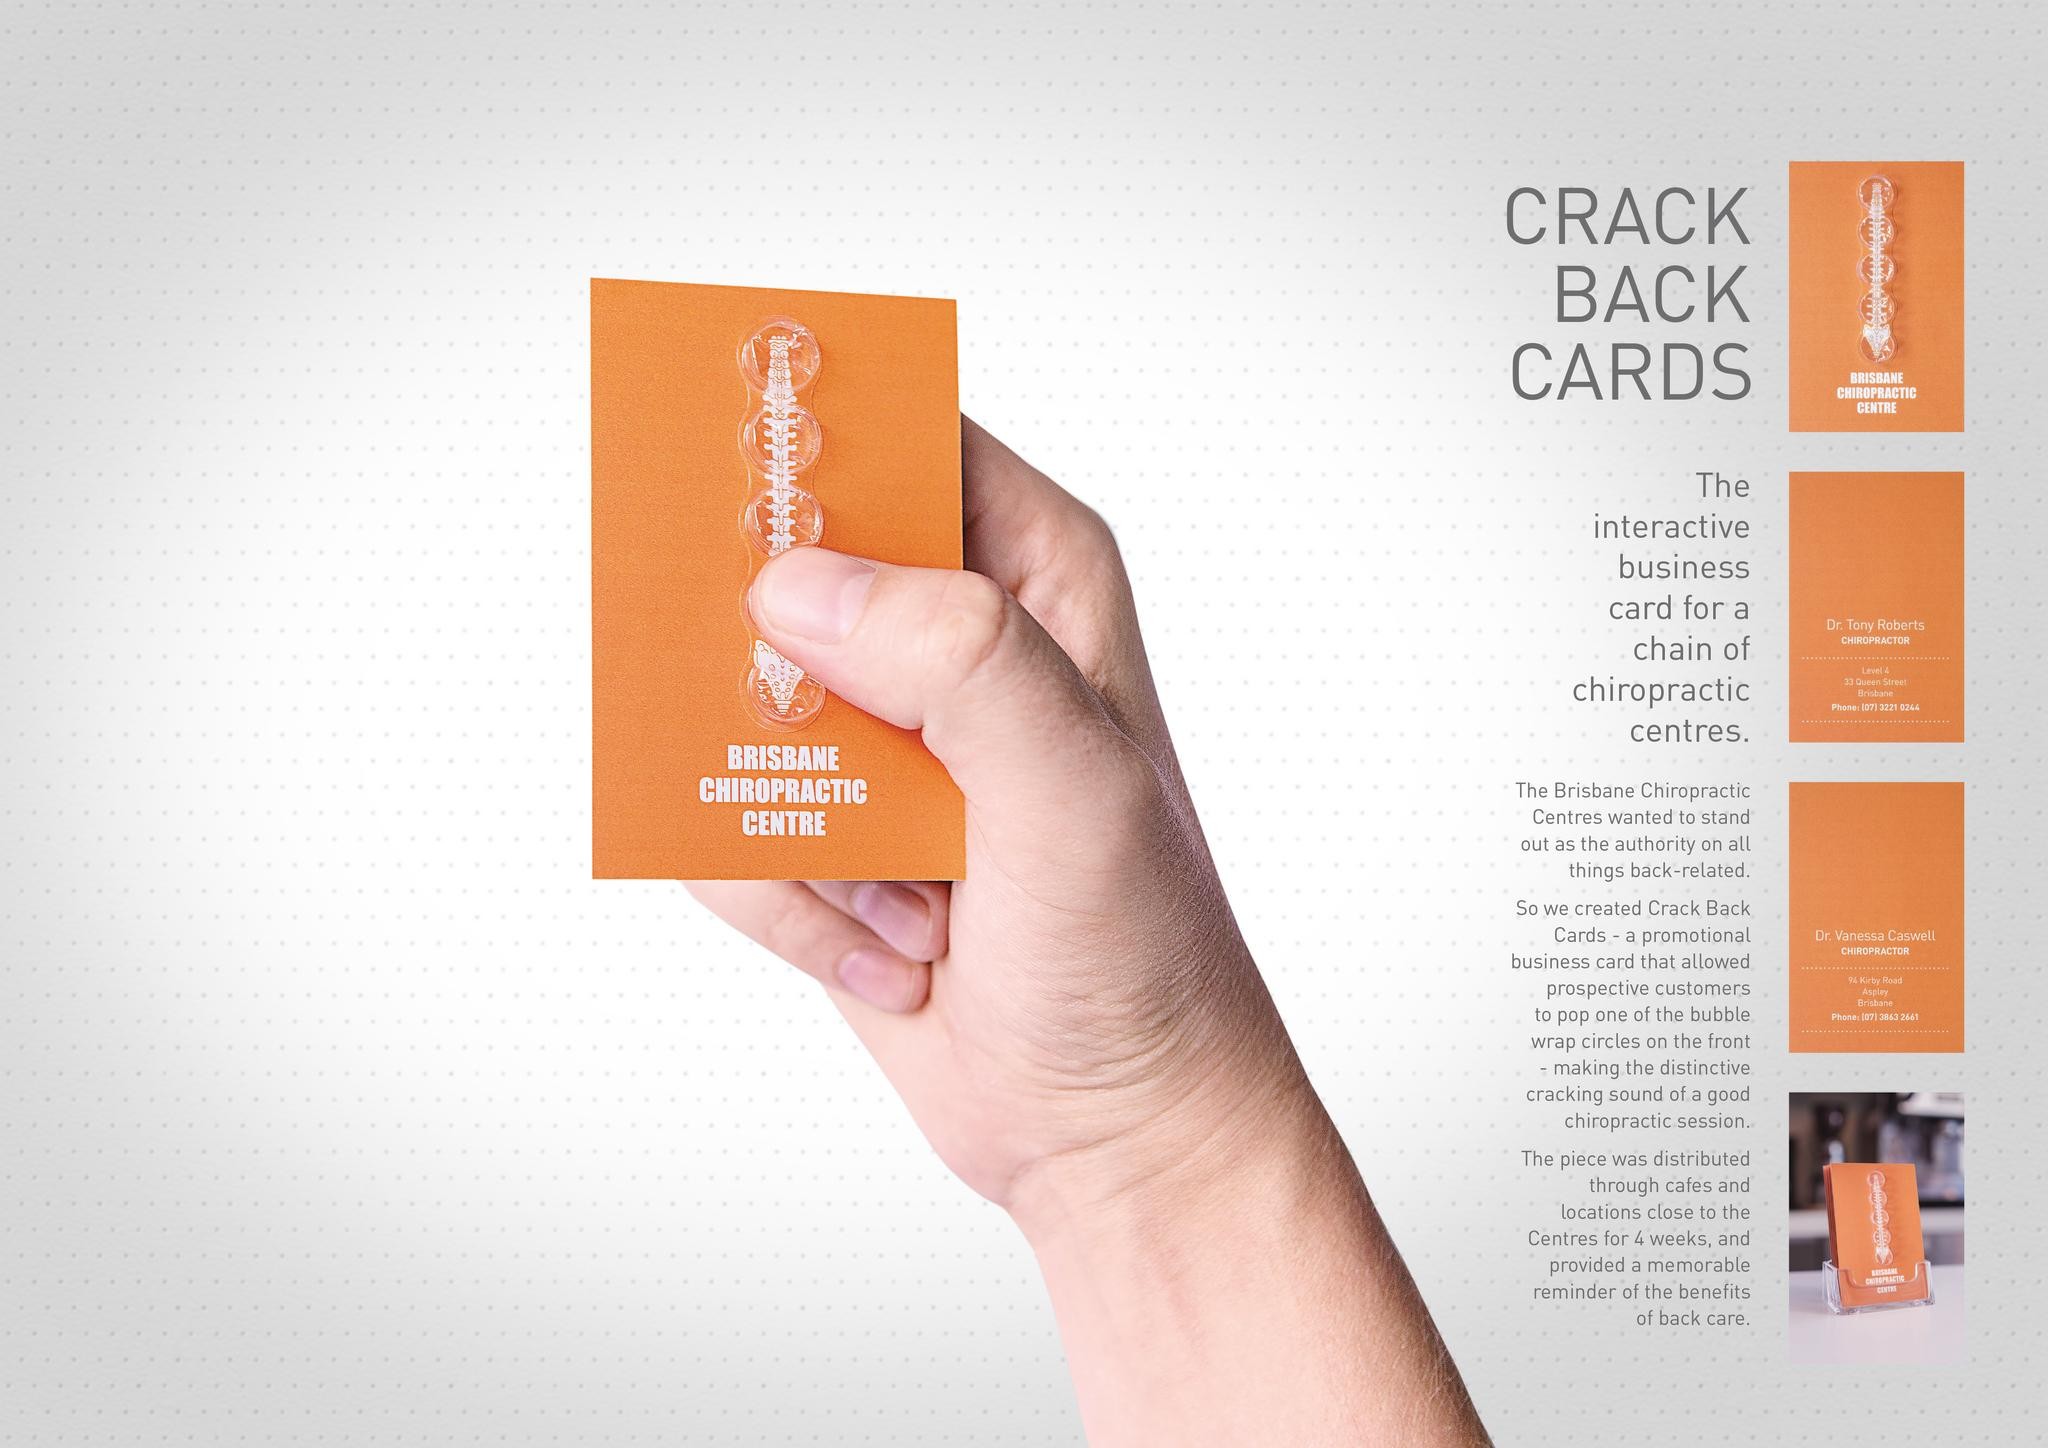 CRACK-BACK CARDS